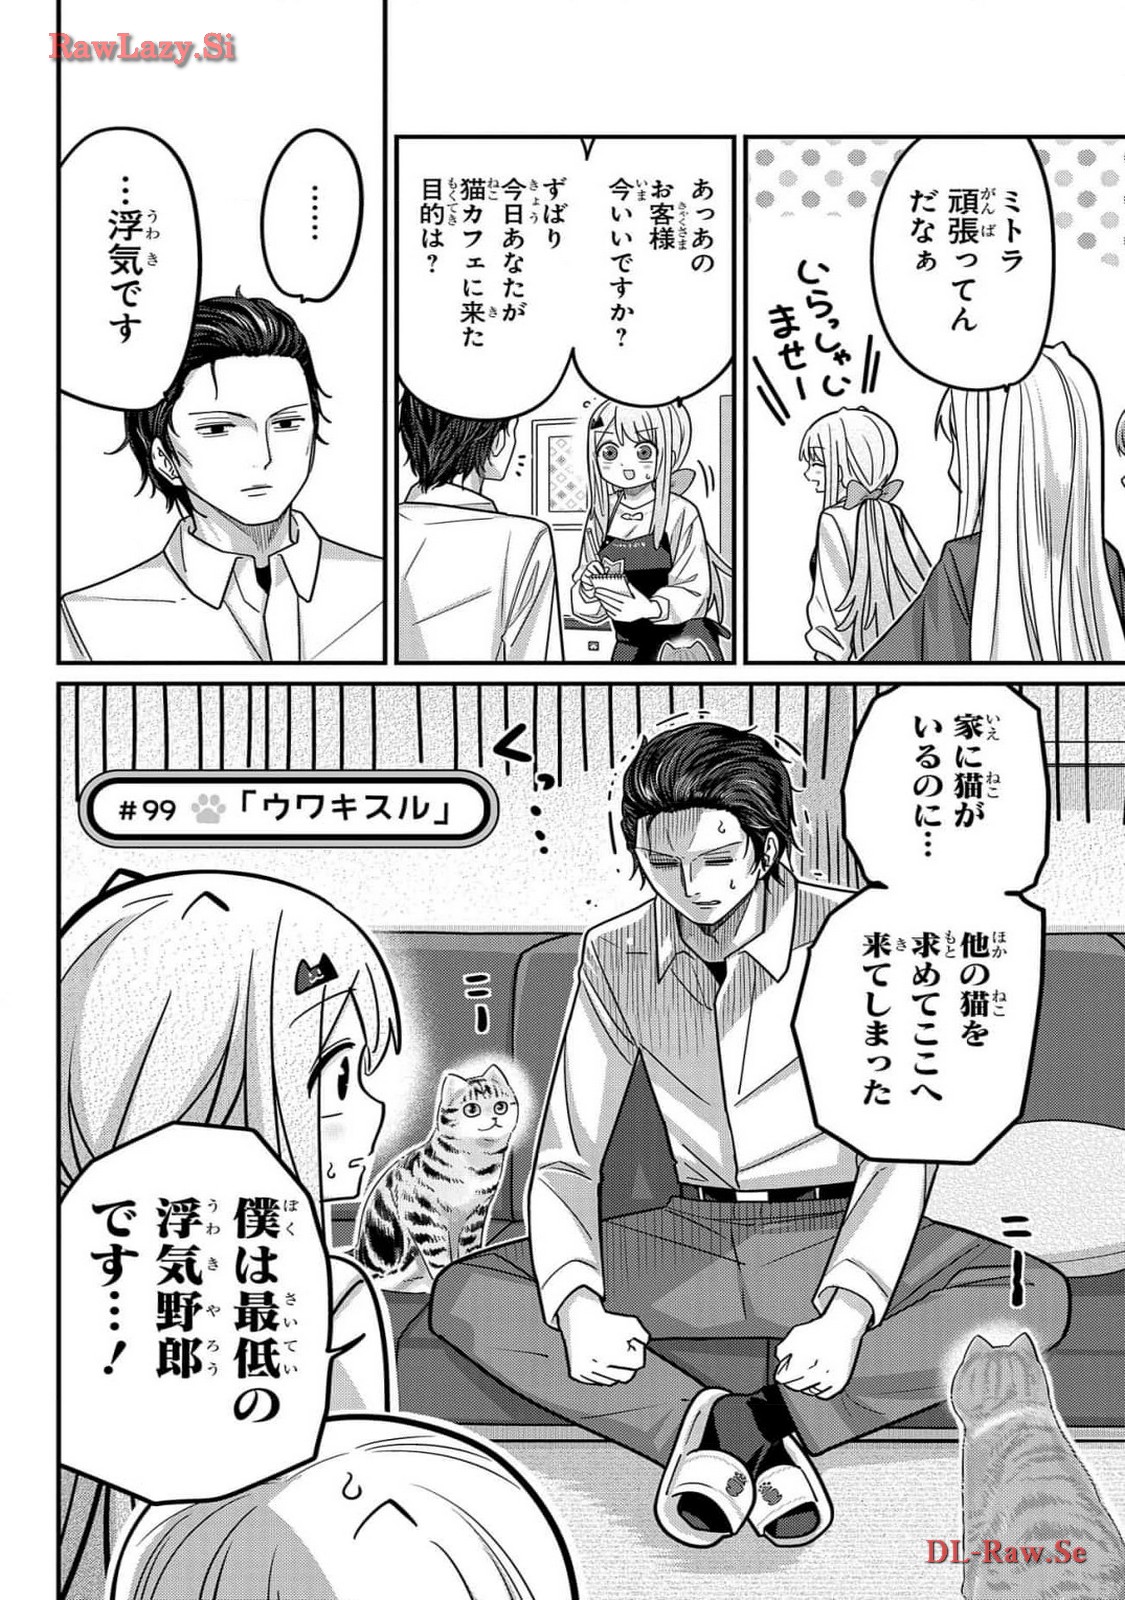 Kawaisugi Crisis - Chapter 99 - Page 4